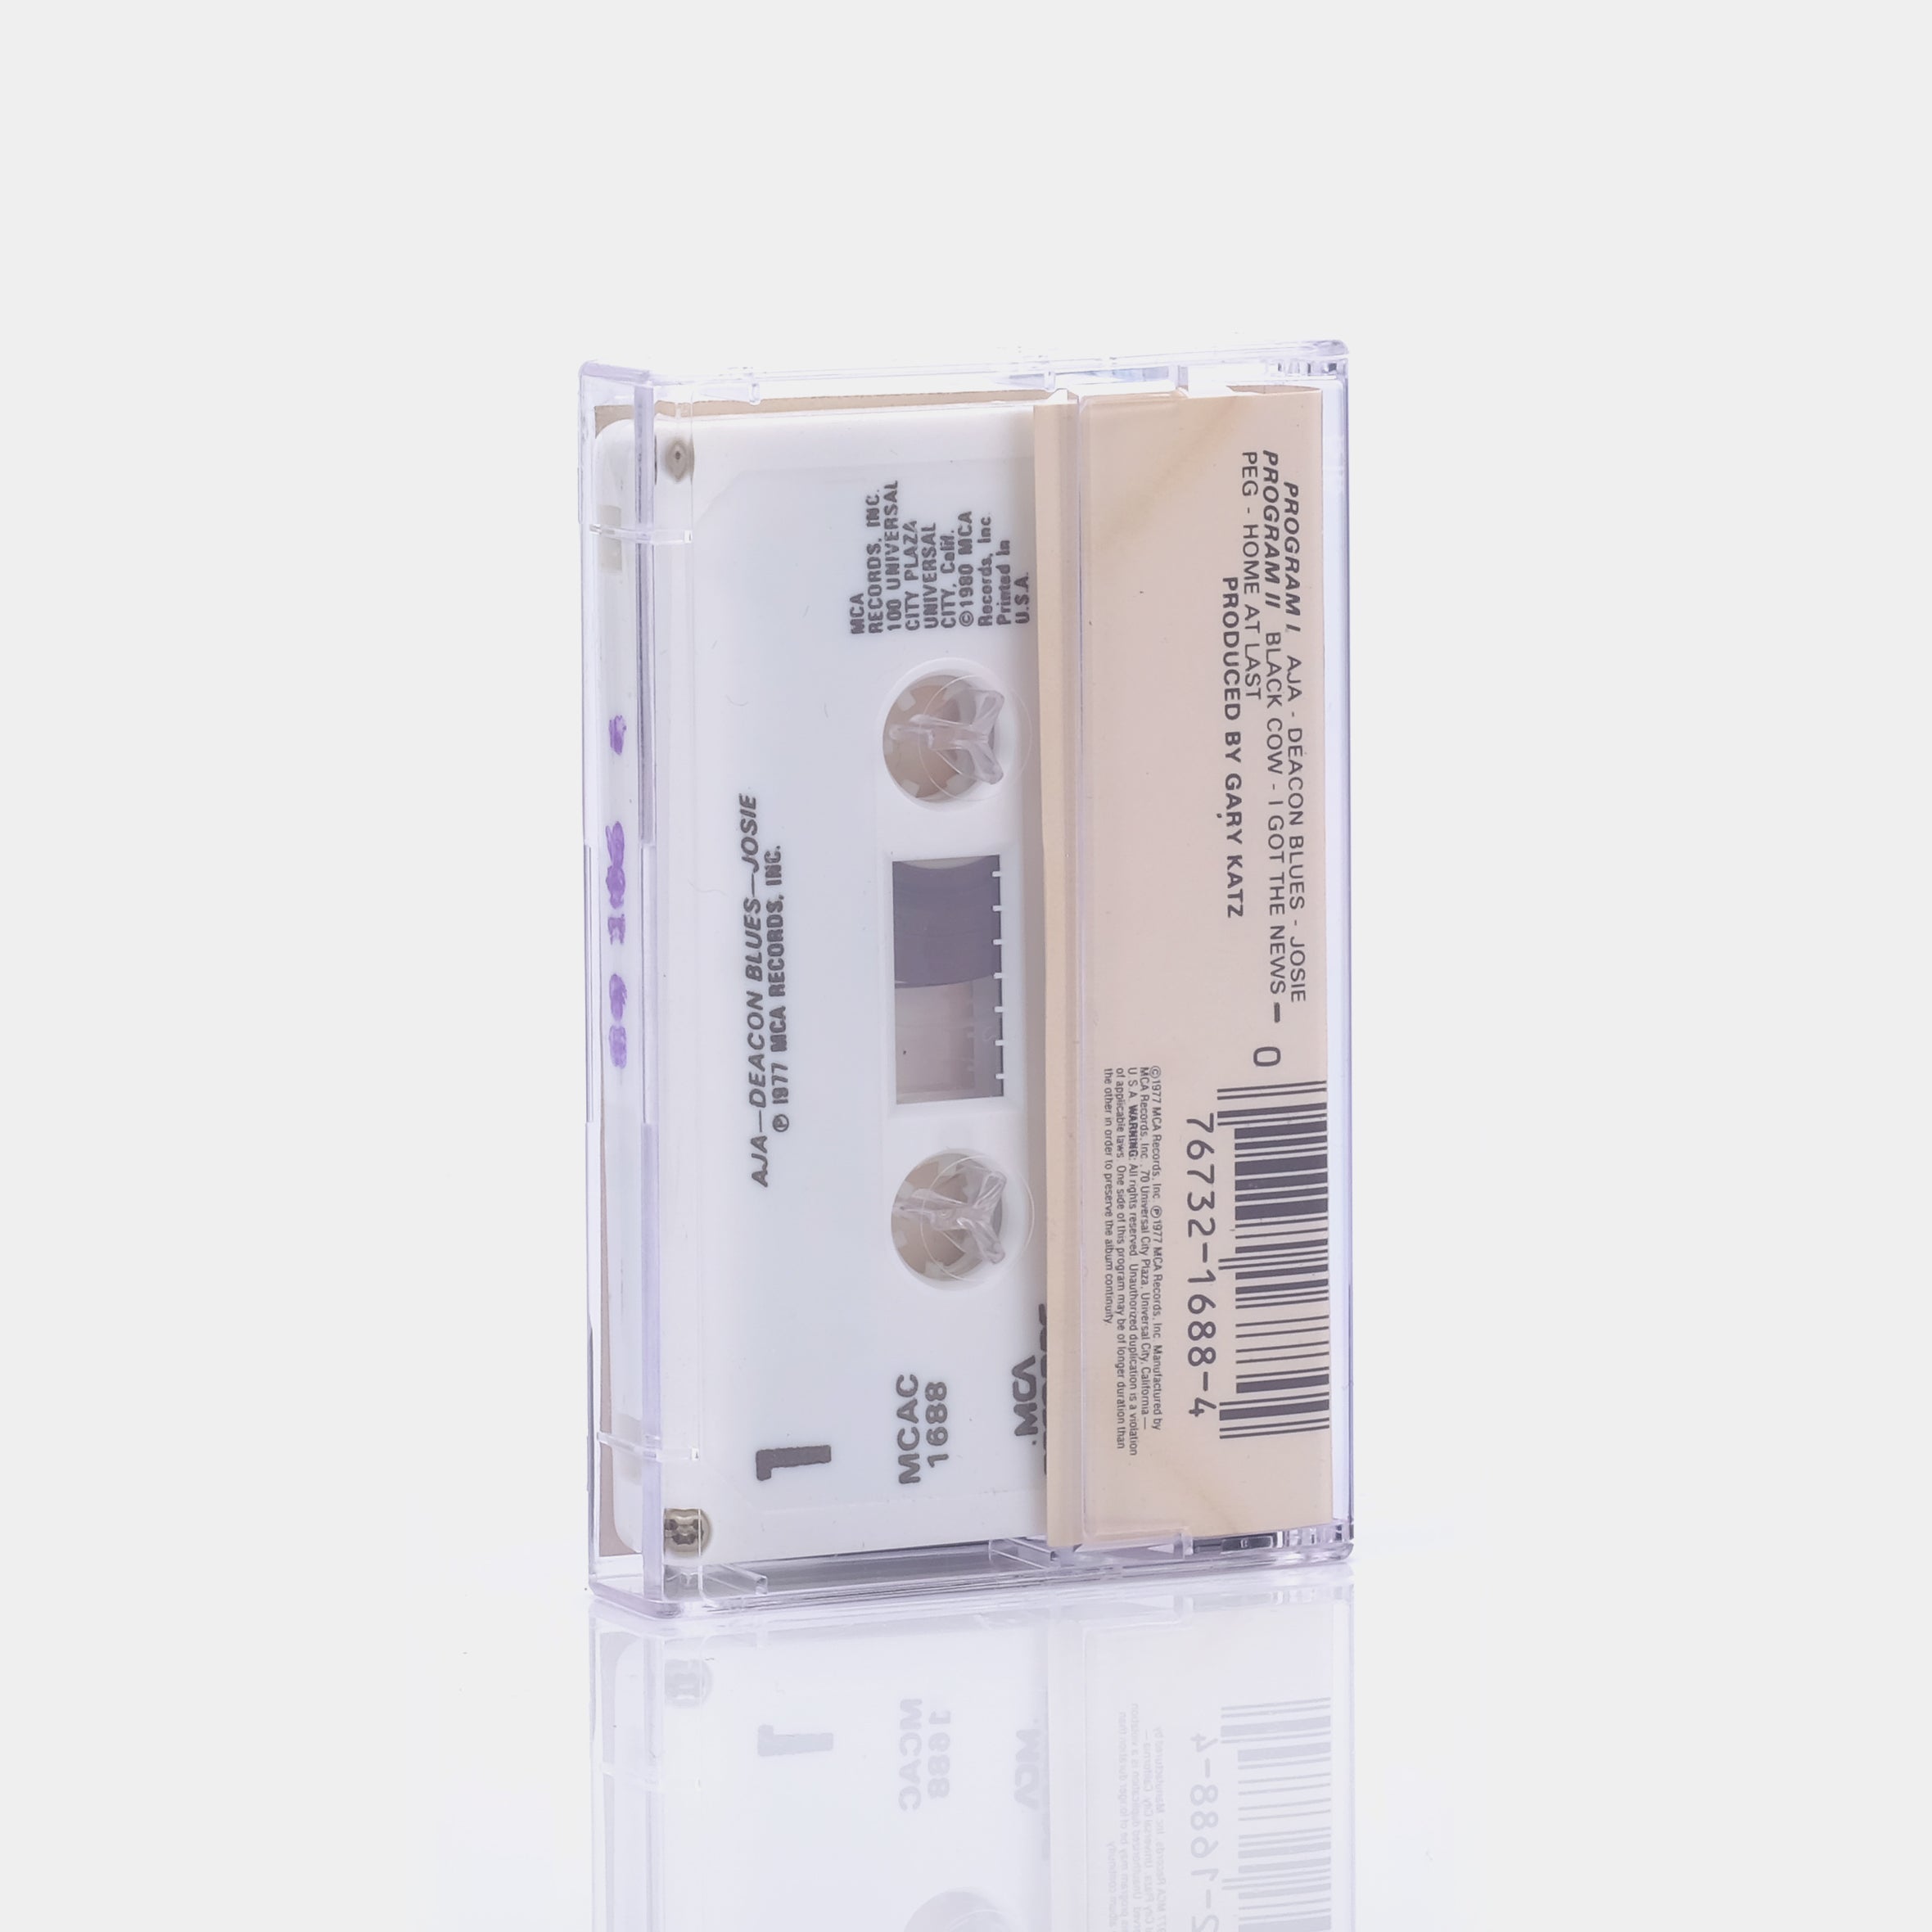 Steely Dan - Aja Cassette Tape